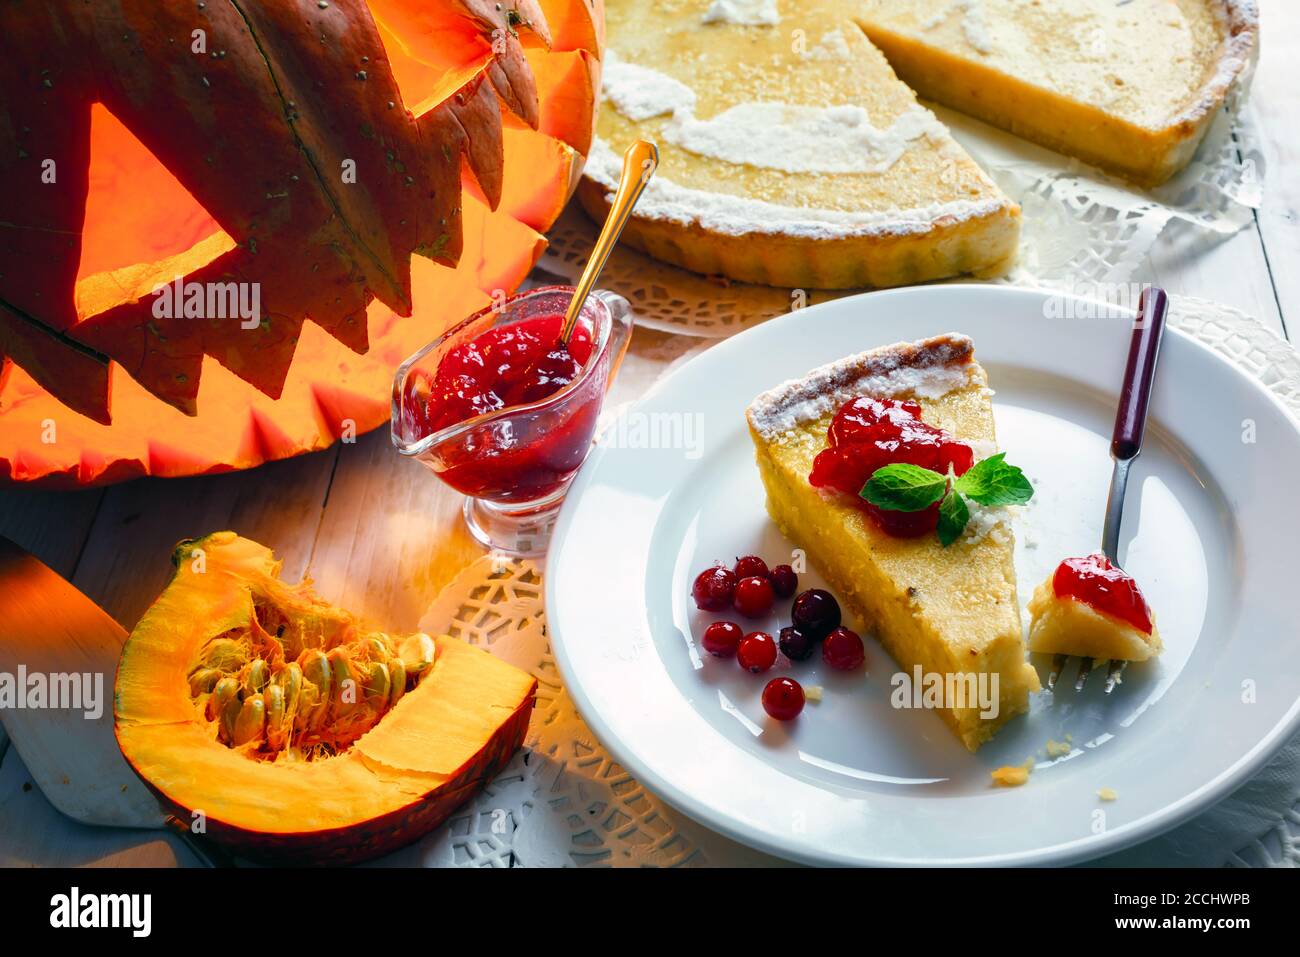 Petit gâteau de citrouille maison d'halloween avec feuille de menthe et confiture de baies de vache sur une assiette blanche. Cuisine traditionnelle de vacances Banque D'Images